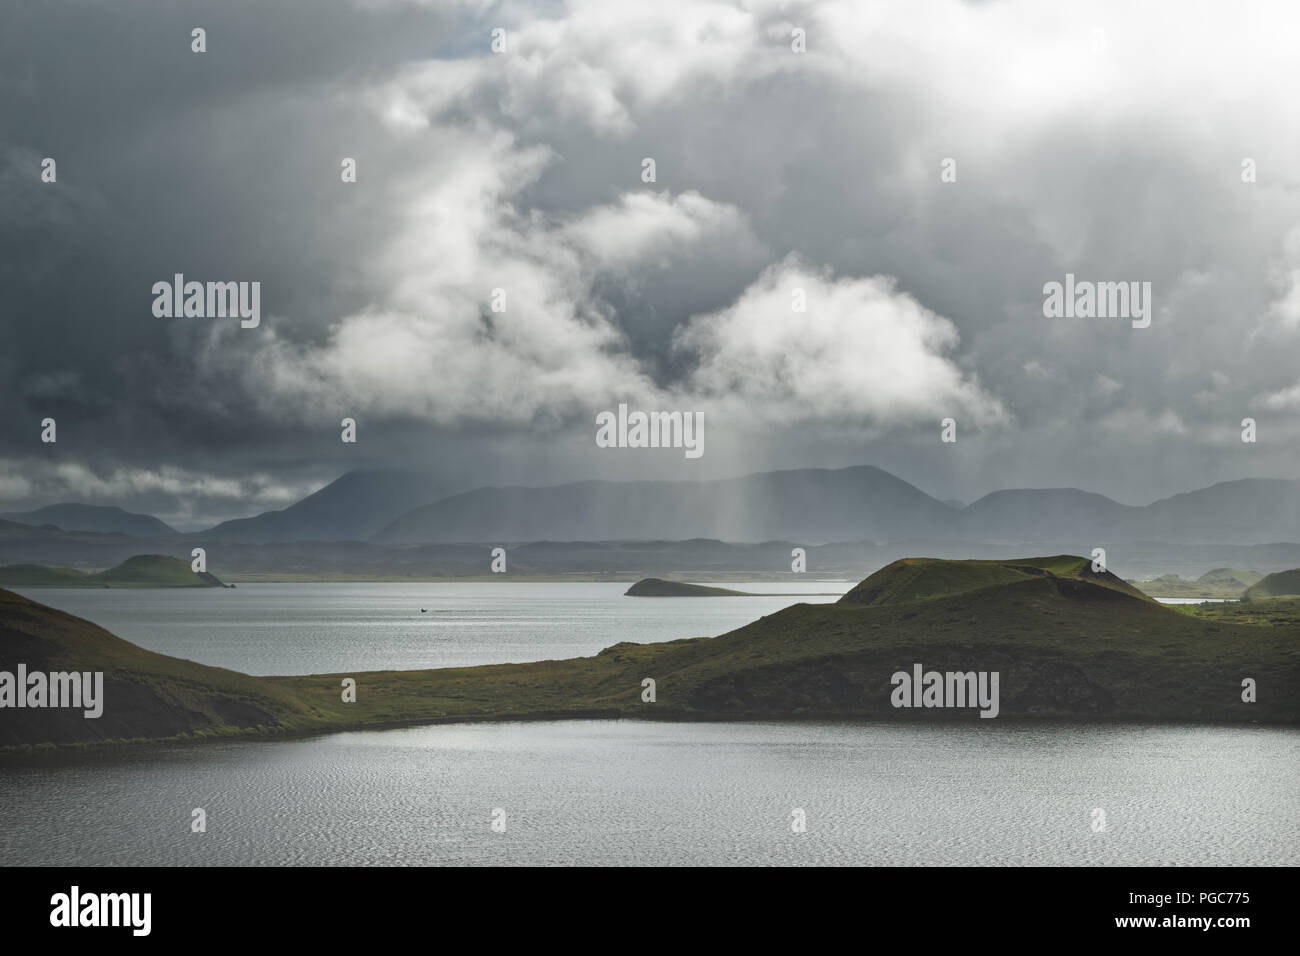 Großer See mit Inseln, von Bergen umrahmt, einzelne Bereiche werden von der Sonne beleuchtet, im Hintergrund graue Wolken und Regen Schleier - Ort: Ic Stockfoto